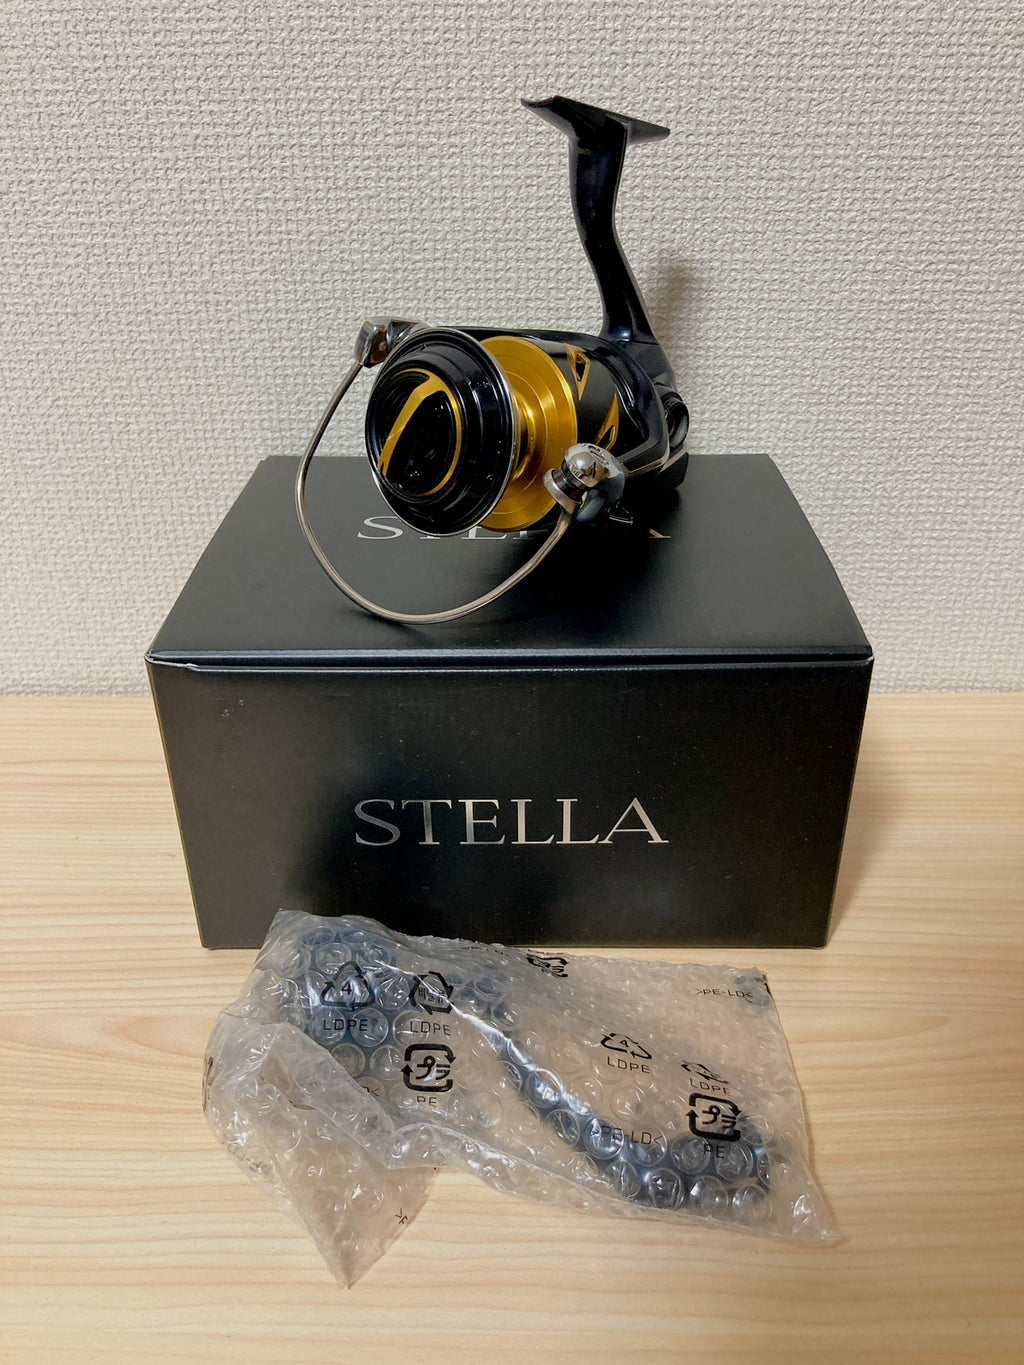 Shimano Spinning Reel 19 STELLA SW 8000PG 4.9:1 Saltwater Fsihing Reel